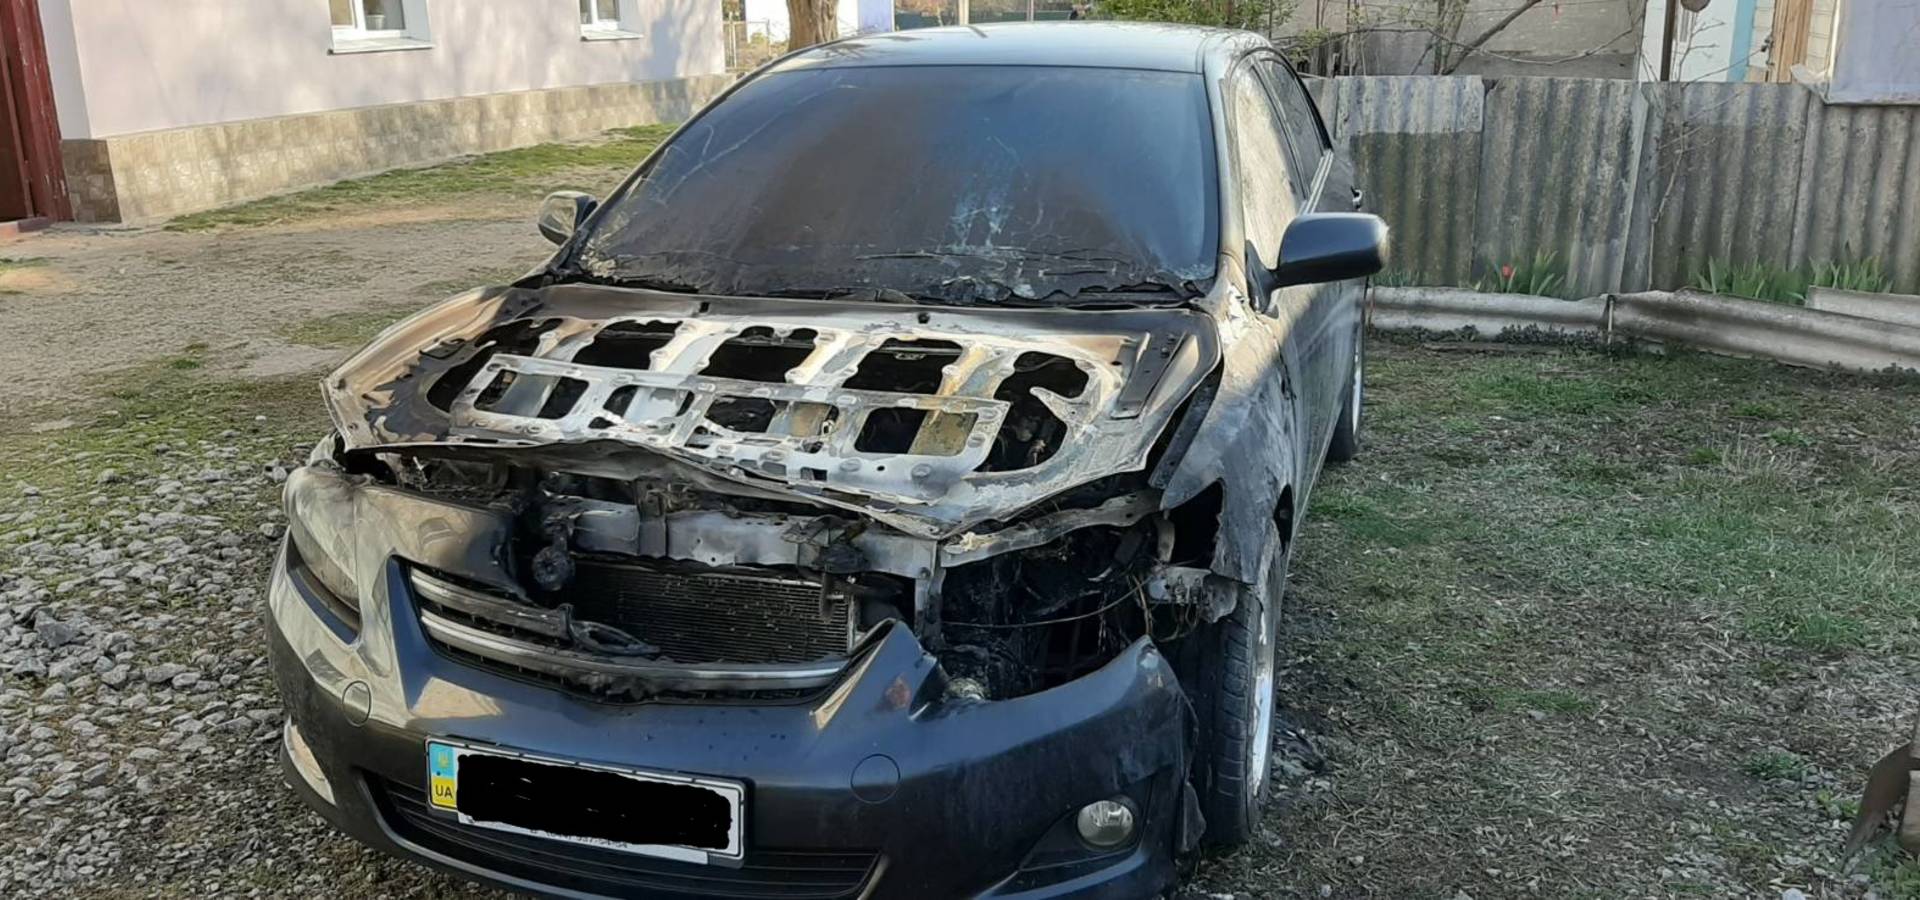 Toyota Corolla загорілась вночі в Уланові на Вінниччині (ФОТО)